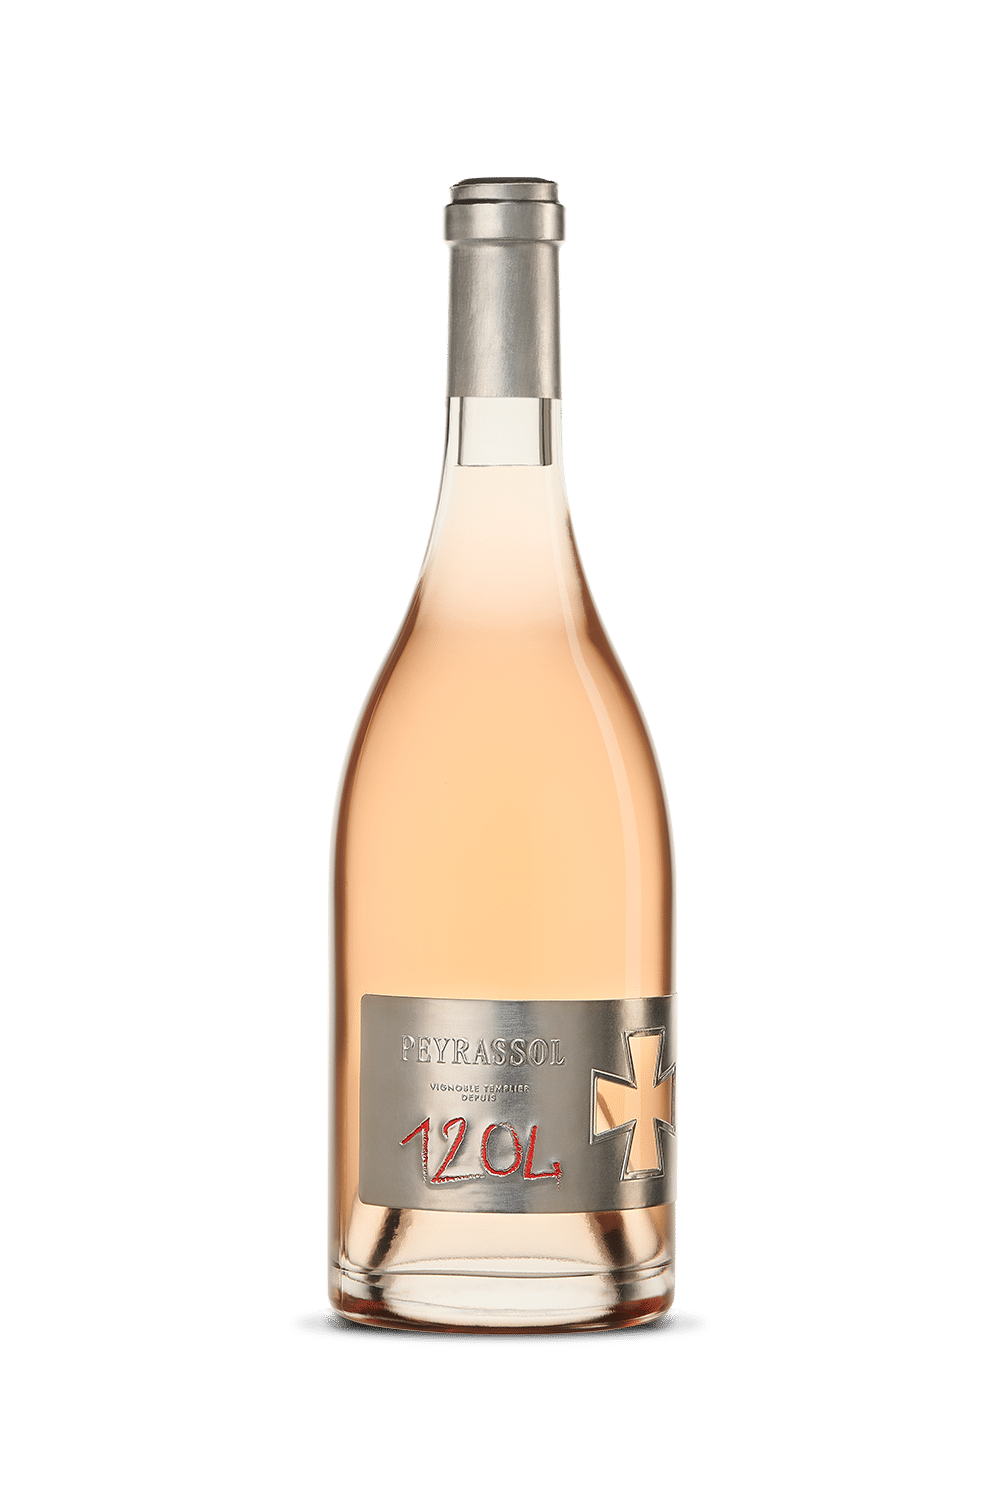 Cuvée 1204 Peyrassol, vin rosé de gastronomie du domaine de la Commanderie de Peyrassol (vin de provence)